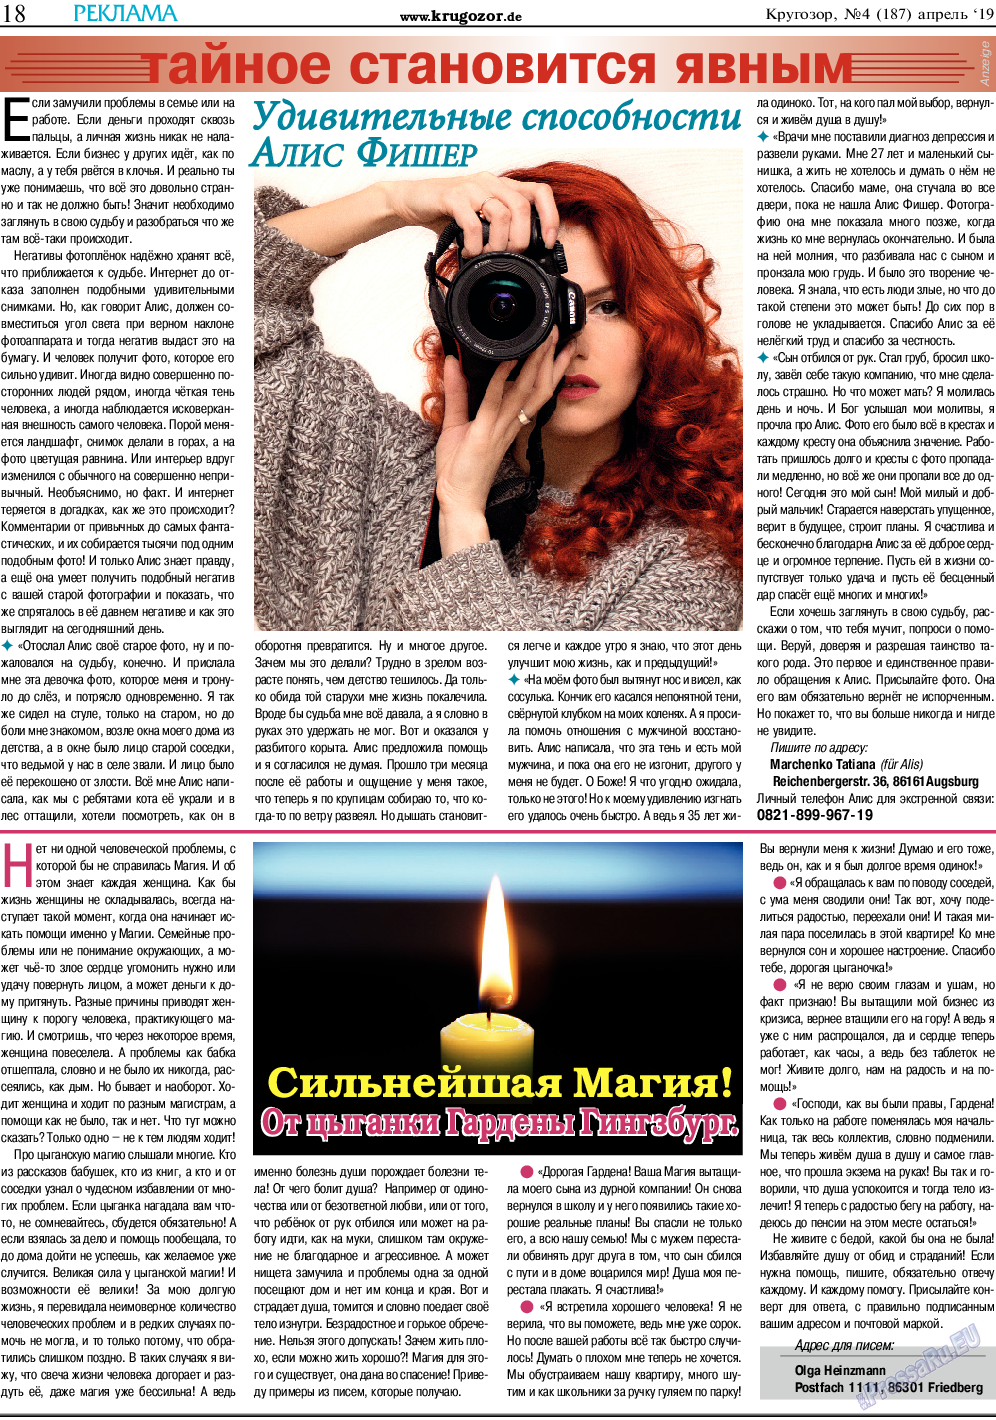 Кругозор, газета. 2019 №4 стр.18